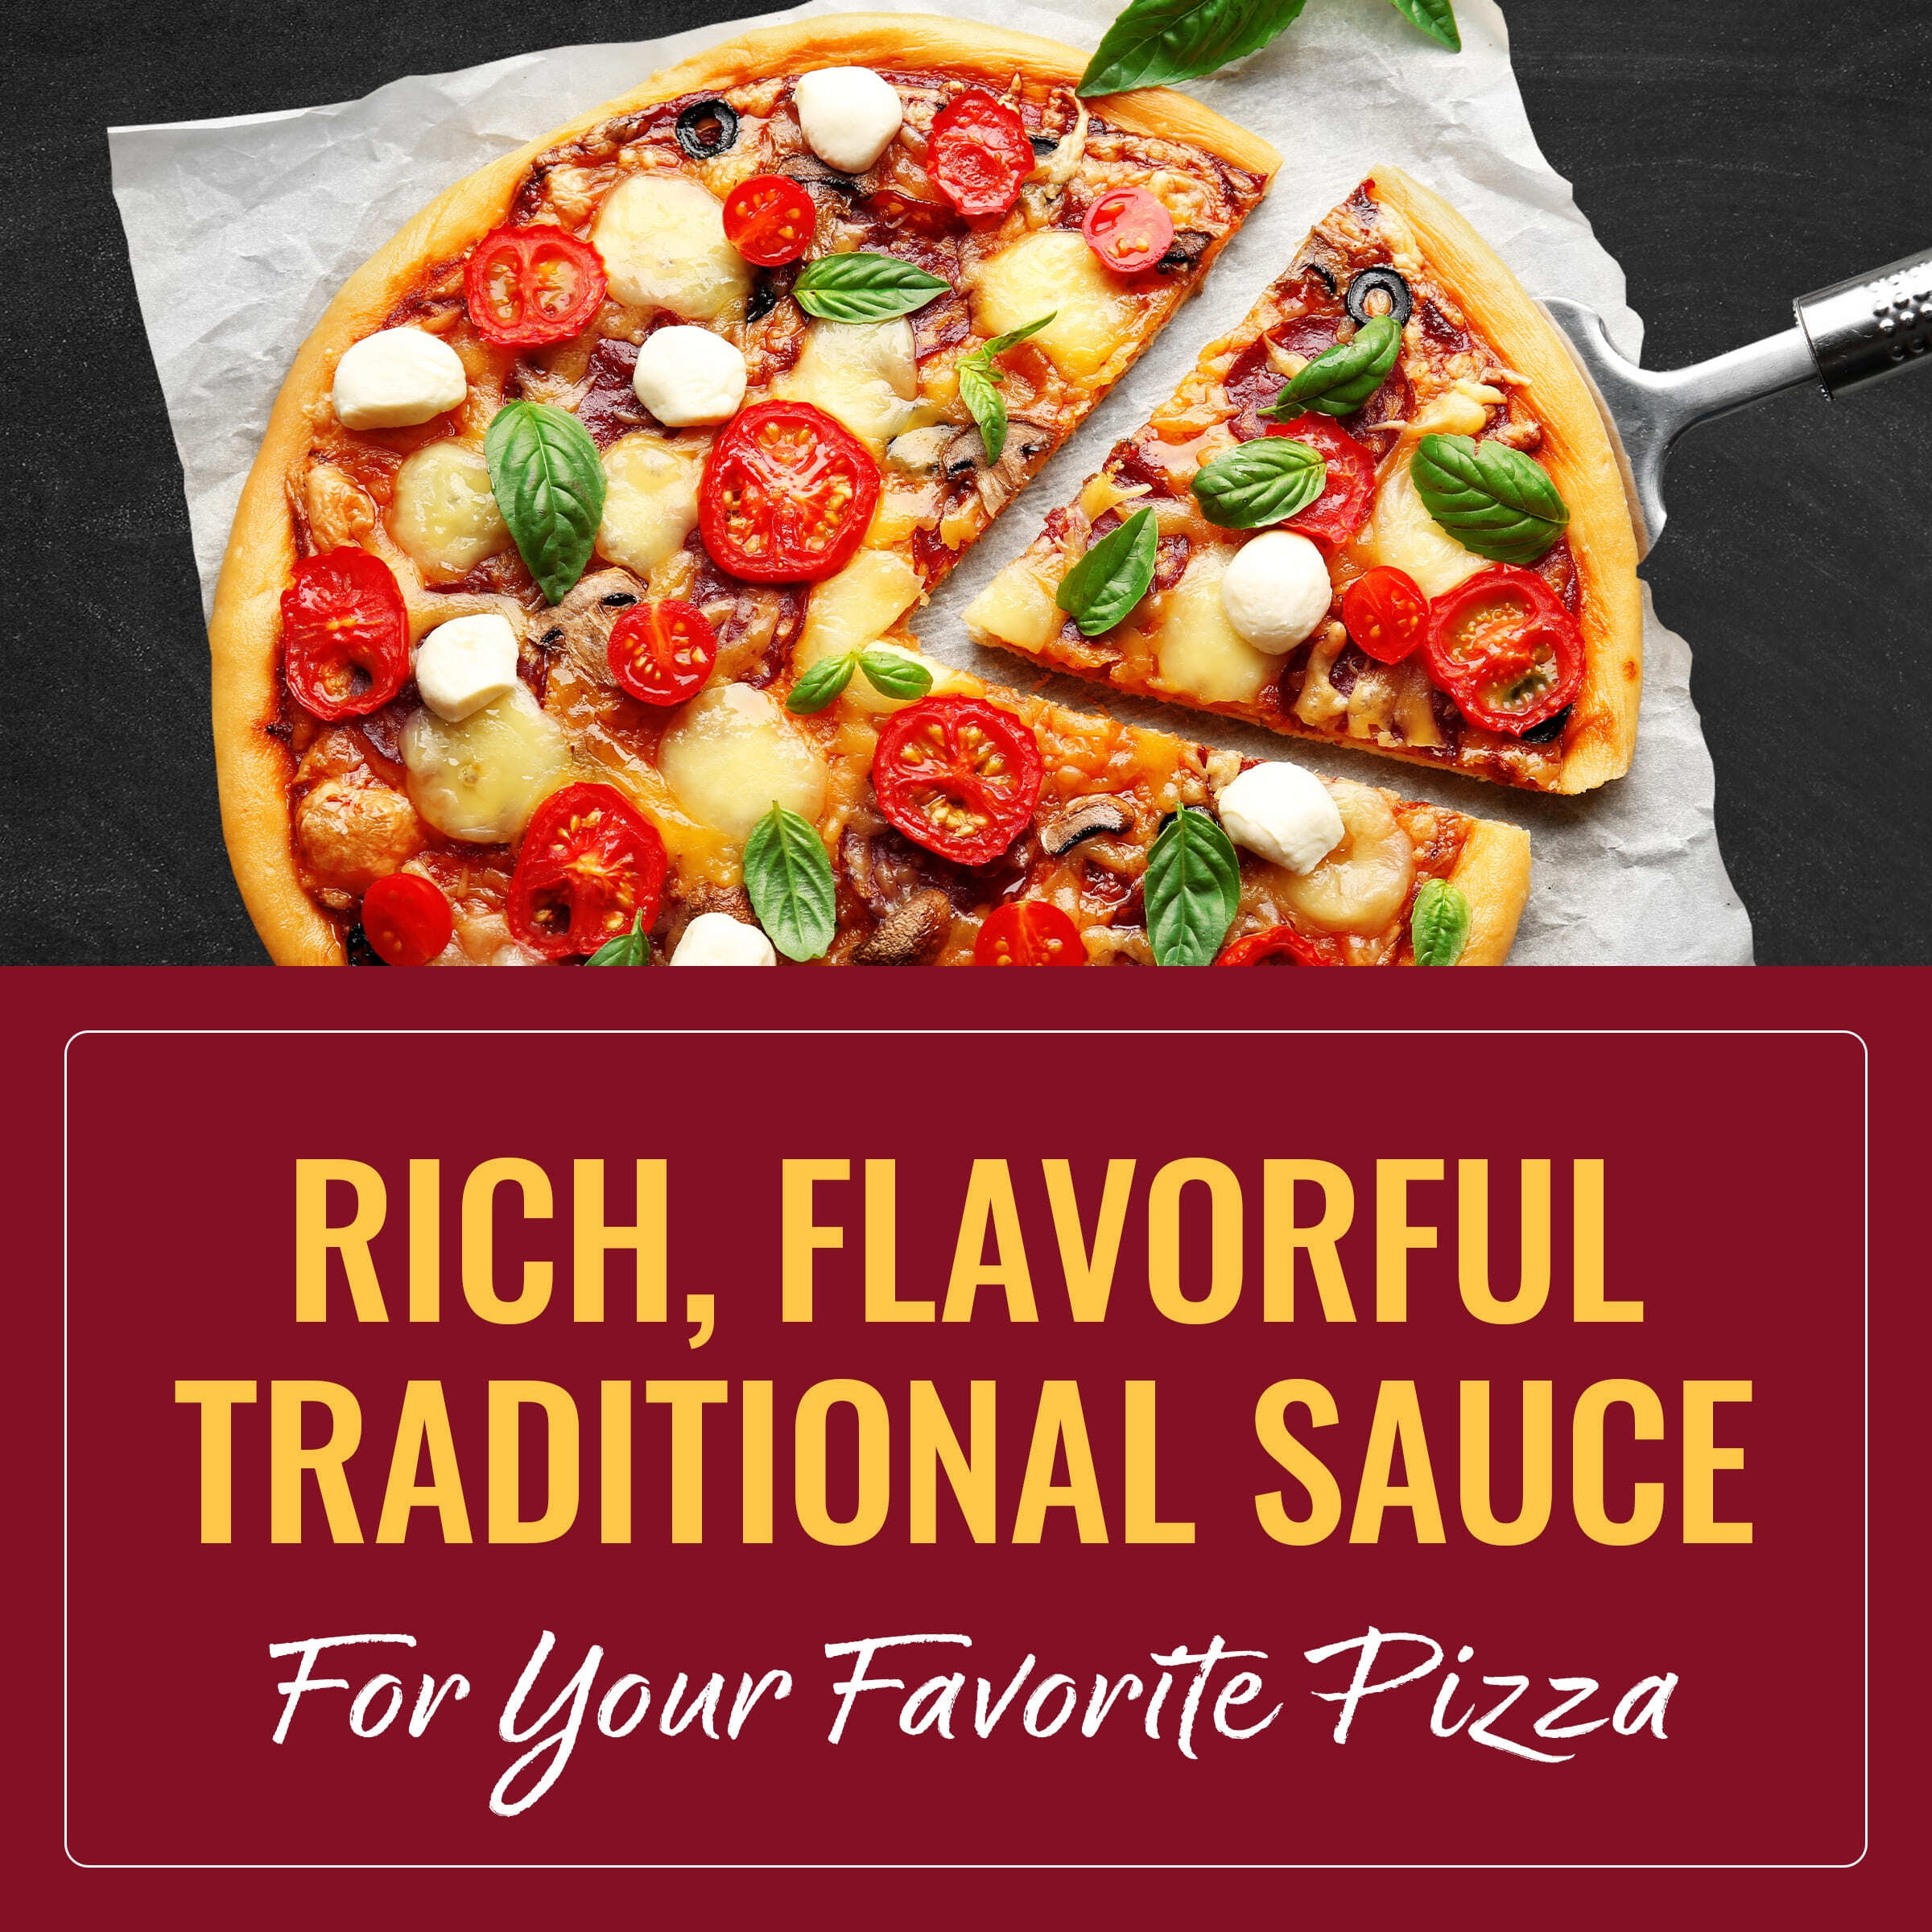 Buy LocalFolks Foods - Pizza Sauce Online - Old Major Market